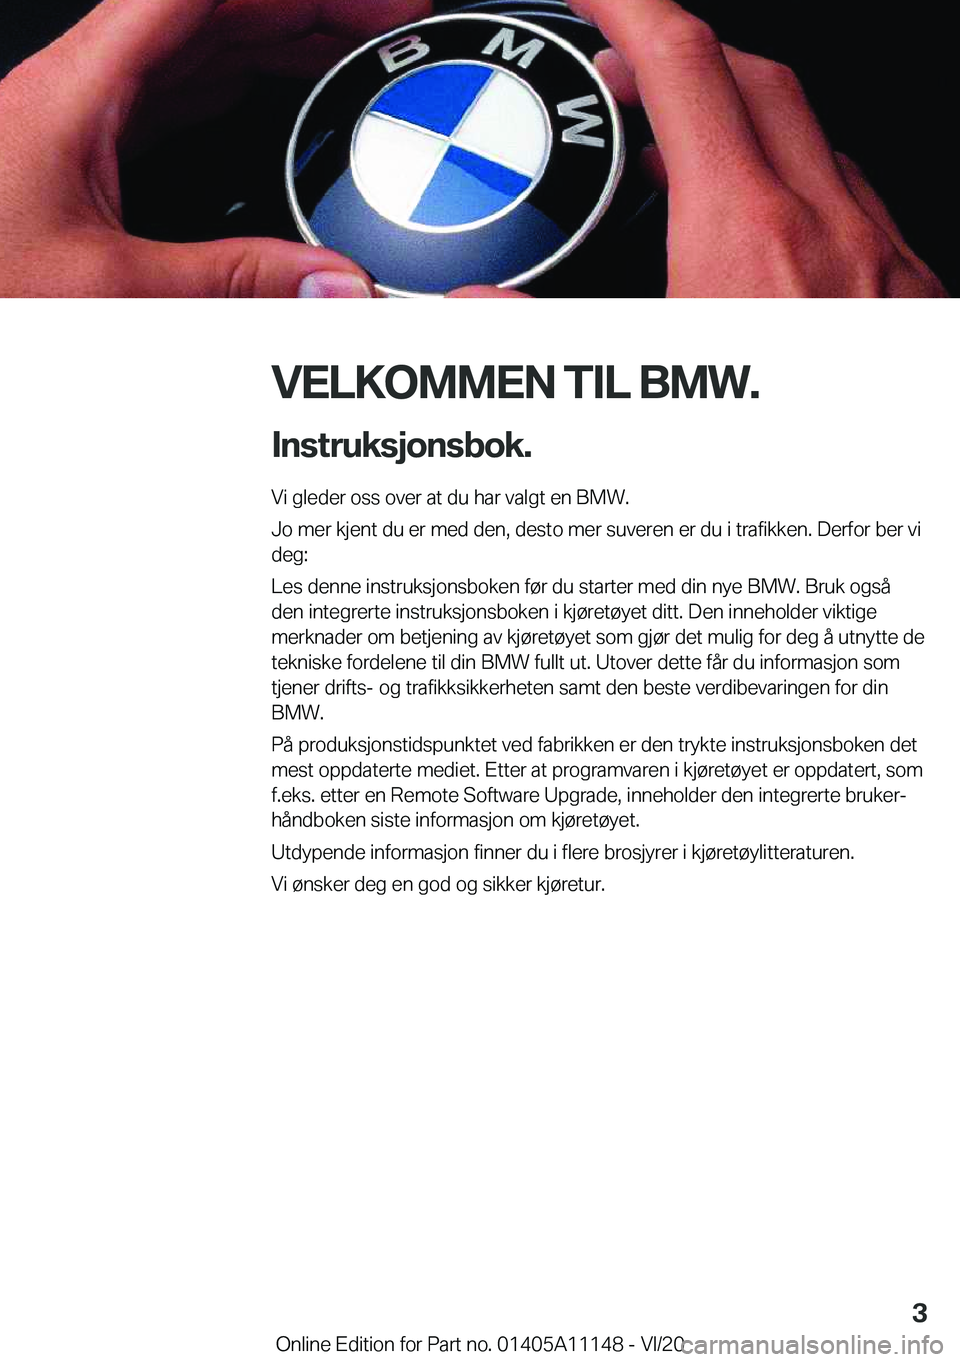 BMW 8 SERIES COUPE 2021  InstruksjonsbØker (in Norwegian) �V�E�L�K�O�M�M�E�N��T�I�L��B�M�W�.�I�n�s�t�r�u�k�s�j�o�n�s�b�o�k�.
�V�i��g�l�e�d�e�r��o�s�s��o�v�e�r��a�t��d�u��h�a�r��v�a�l�g�t��e�n��B�M�W�.
�J�o��m�e�r��k�j�e�n�t��d�u��e�r��m�e�d�